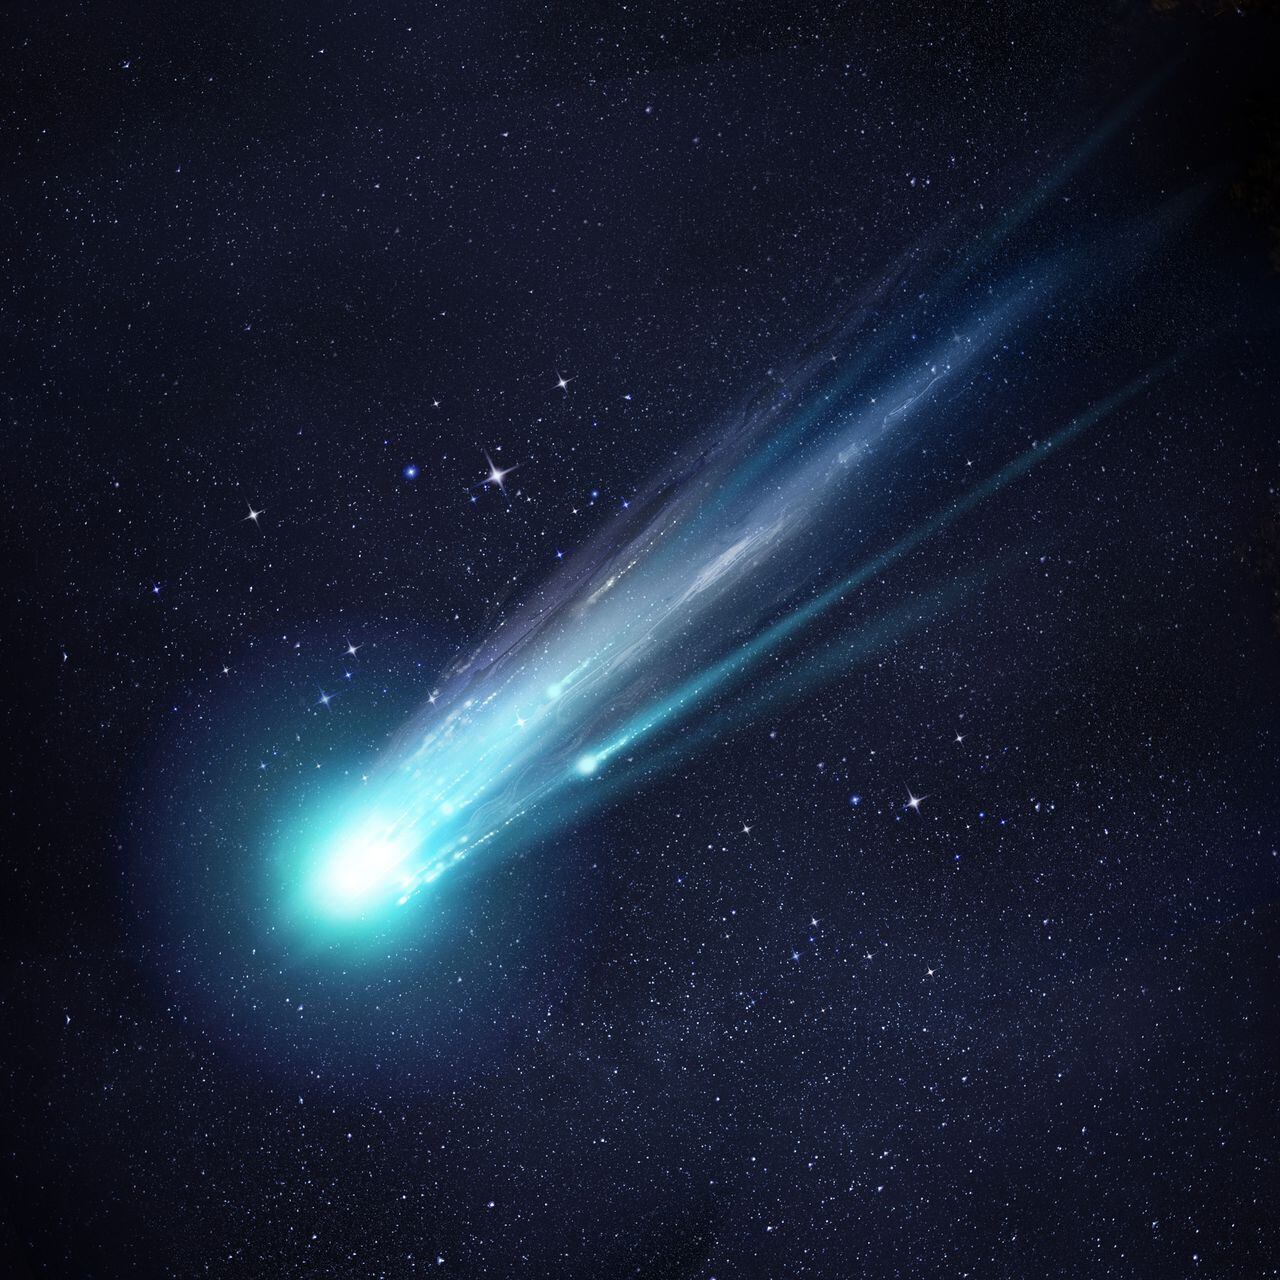 El cometa Halley es conocido por su larga cola.